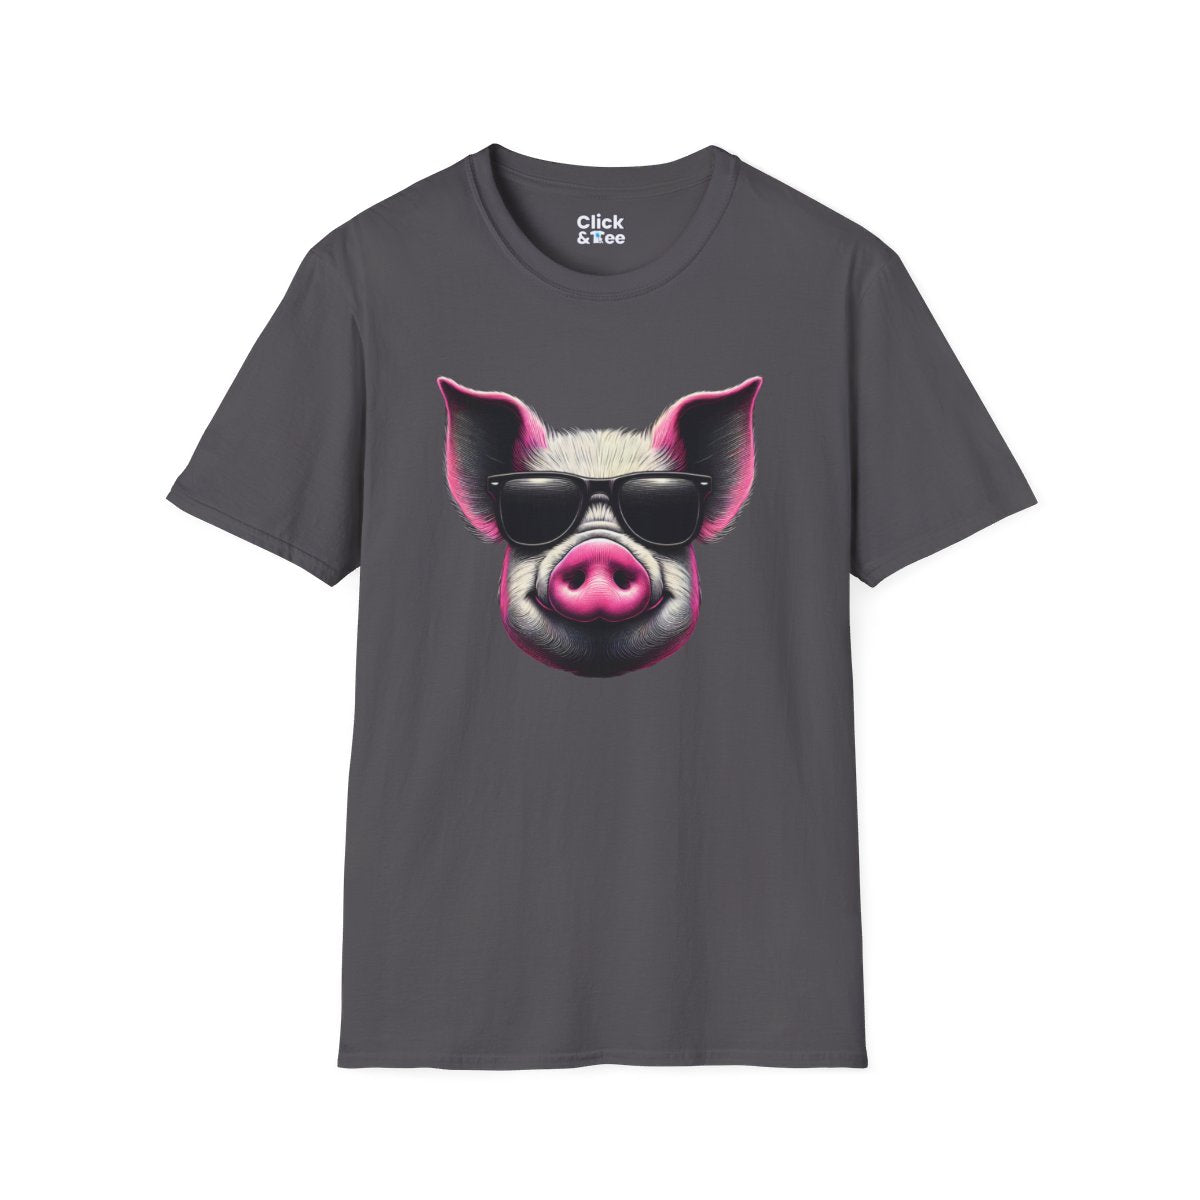 Graphic ArtPink Pig Face Unique T-Shirt Image 16